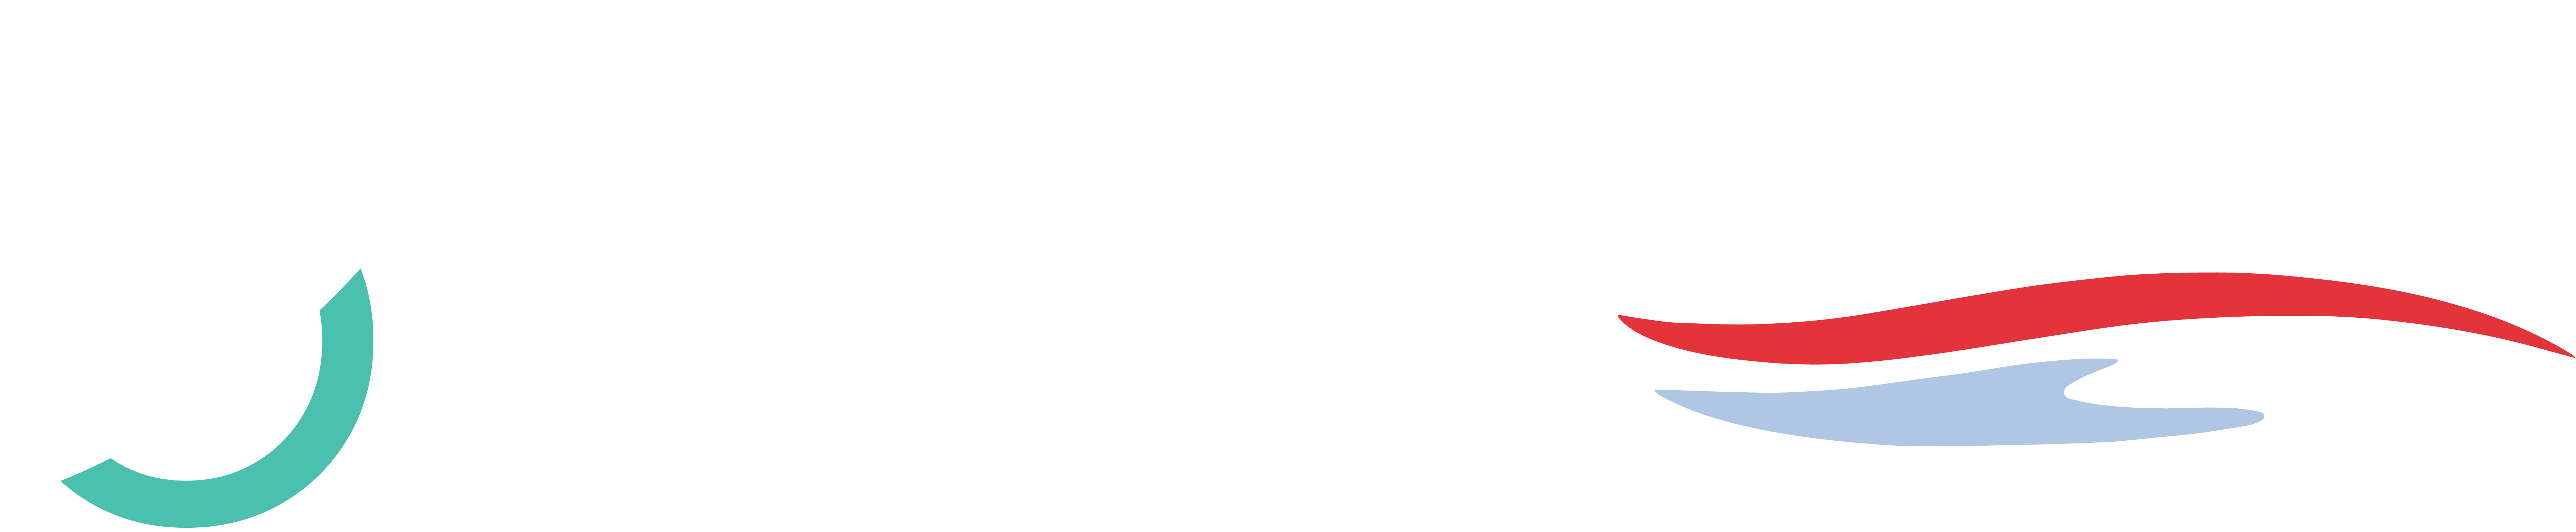 btis-logo-and-kraft-lake@6x